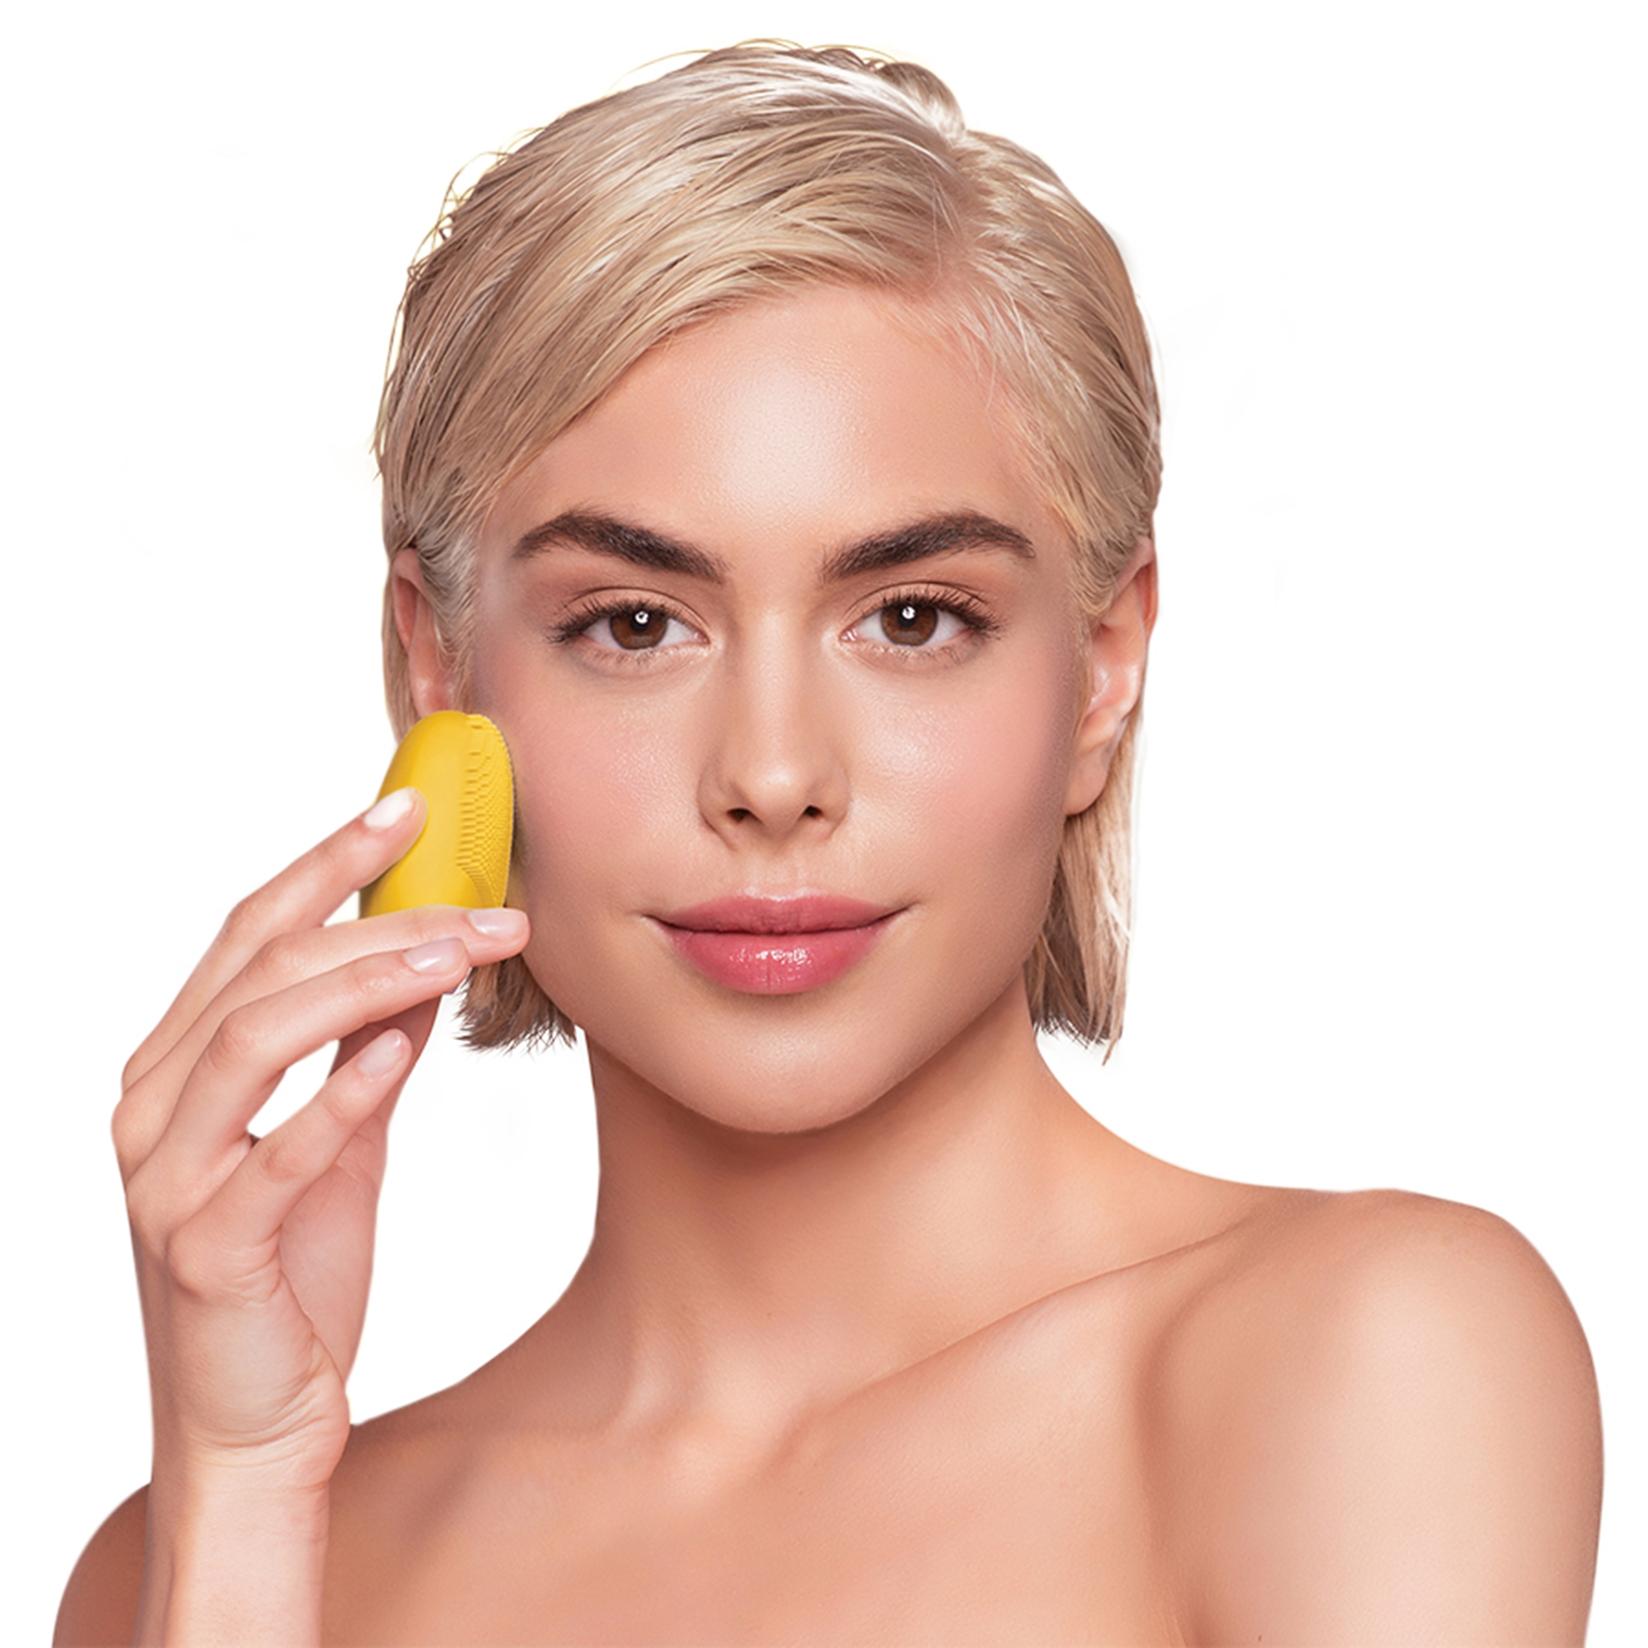 Selected image for FOREO LUNA Play Plus Sunflower Yellow sonični uređaj za čišćenje lica za sve tipove kože